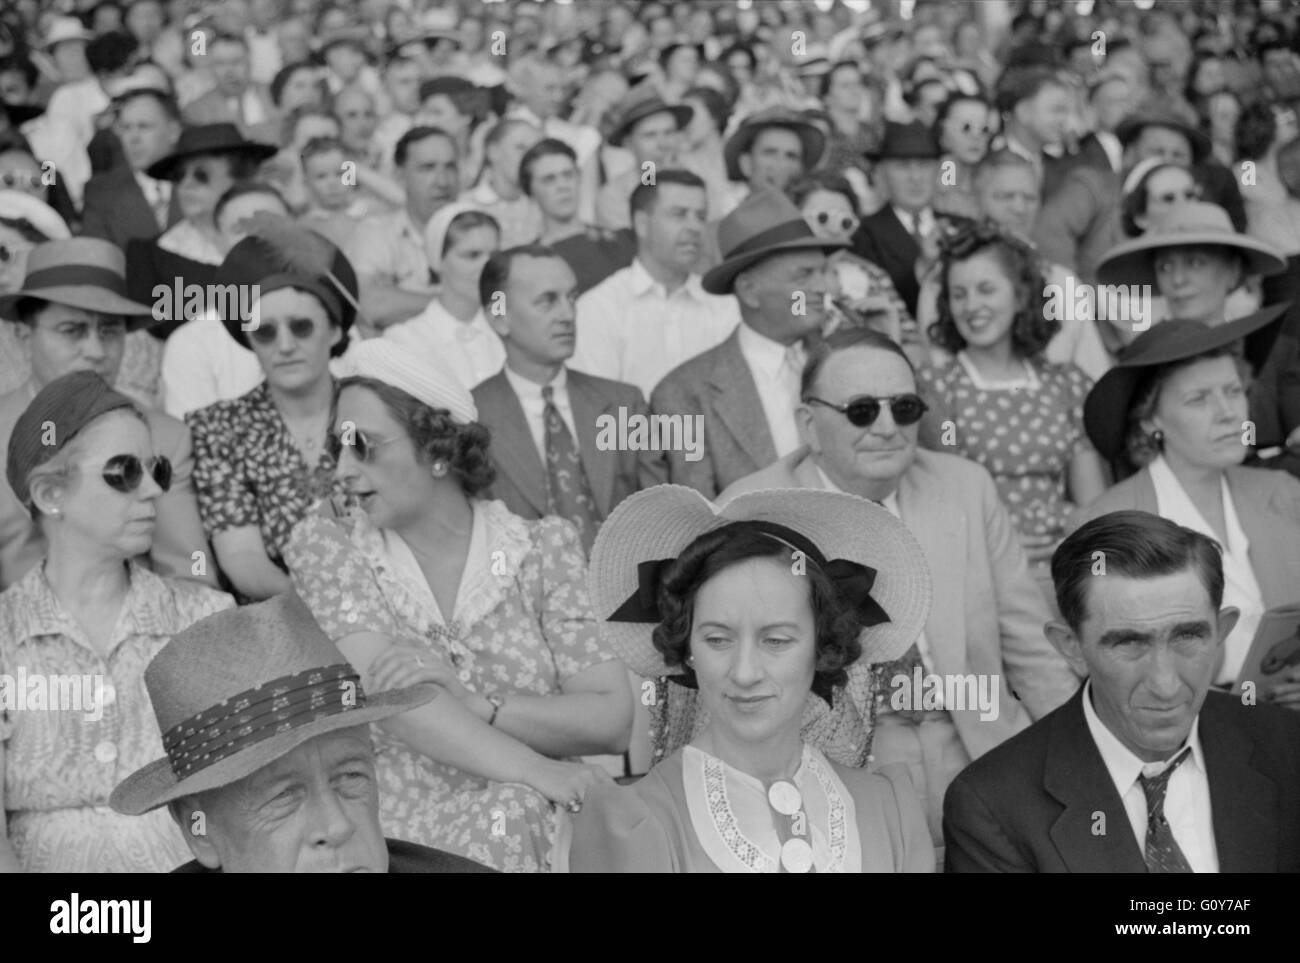 Gli spettatori a Sulky gare al Fair, Rutland, Vermont, USA, da Jack Delano per la Farm Security Administration, Settembre 1941 Foto Stock